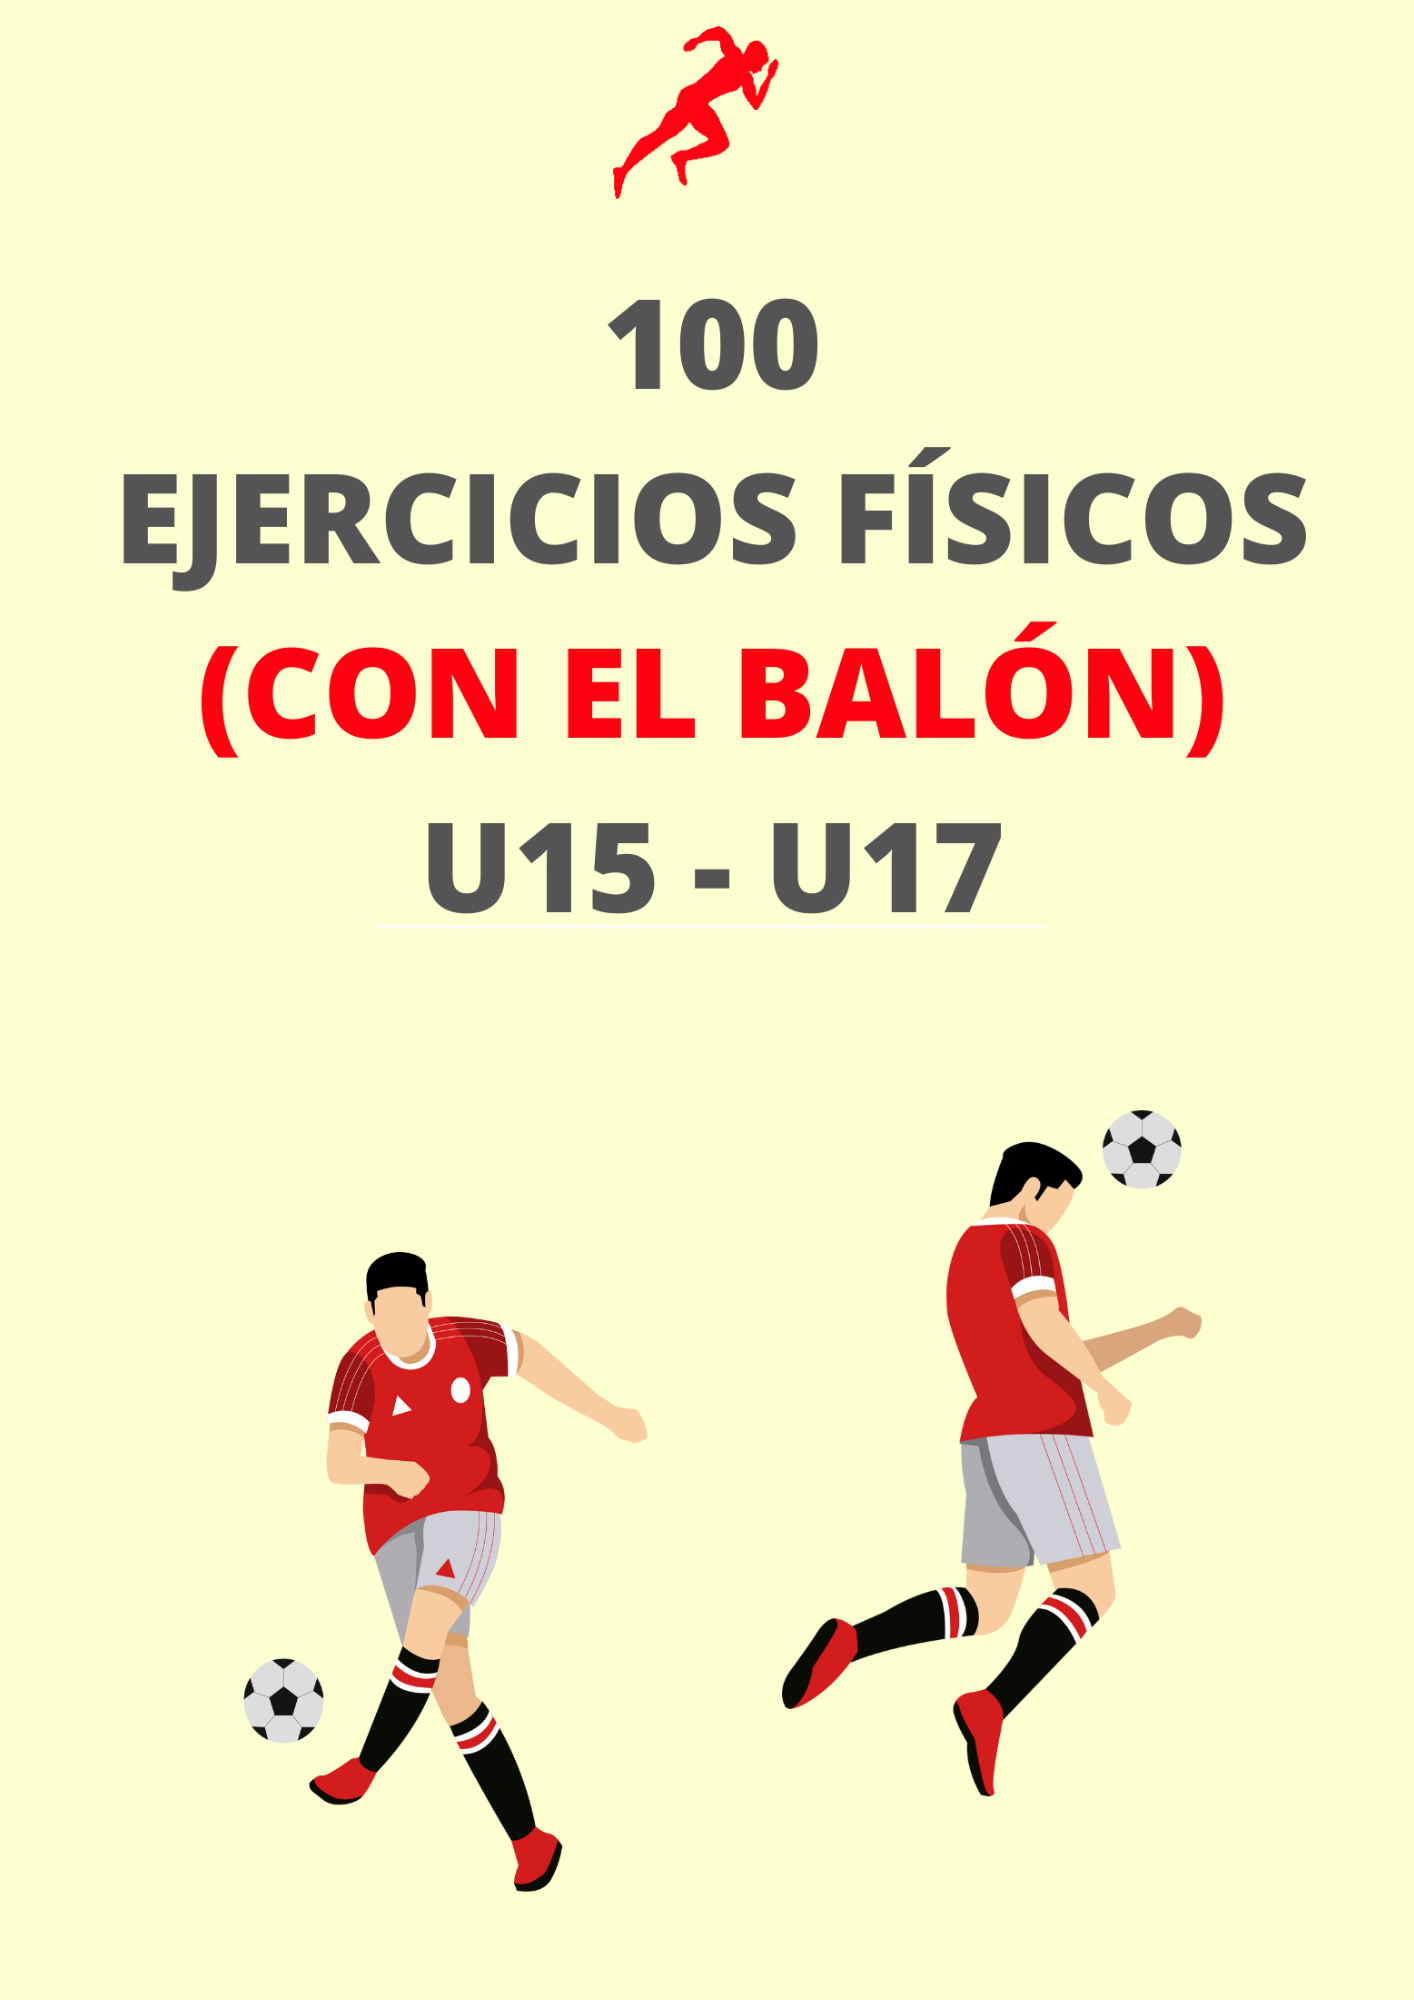 PDF 100 IDEAS DE EJERCICIOS FÍSICOS (CON BALÓN) U15-U17